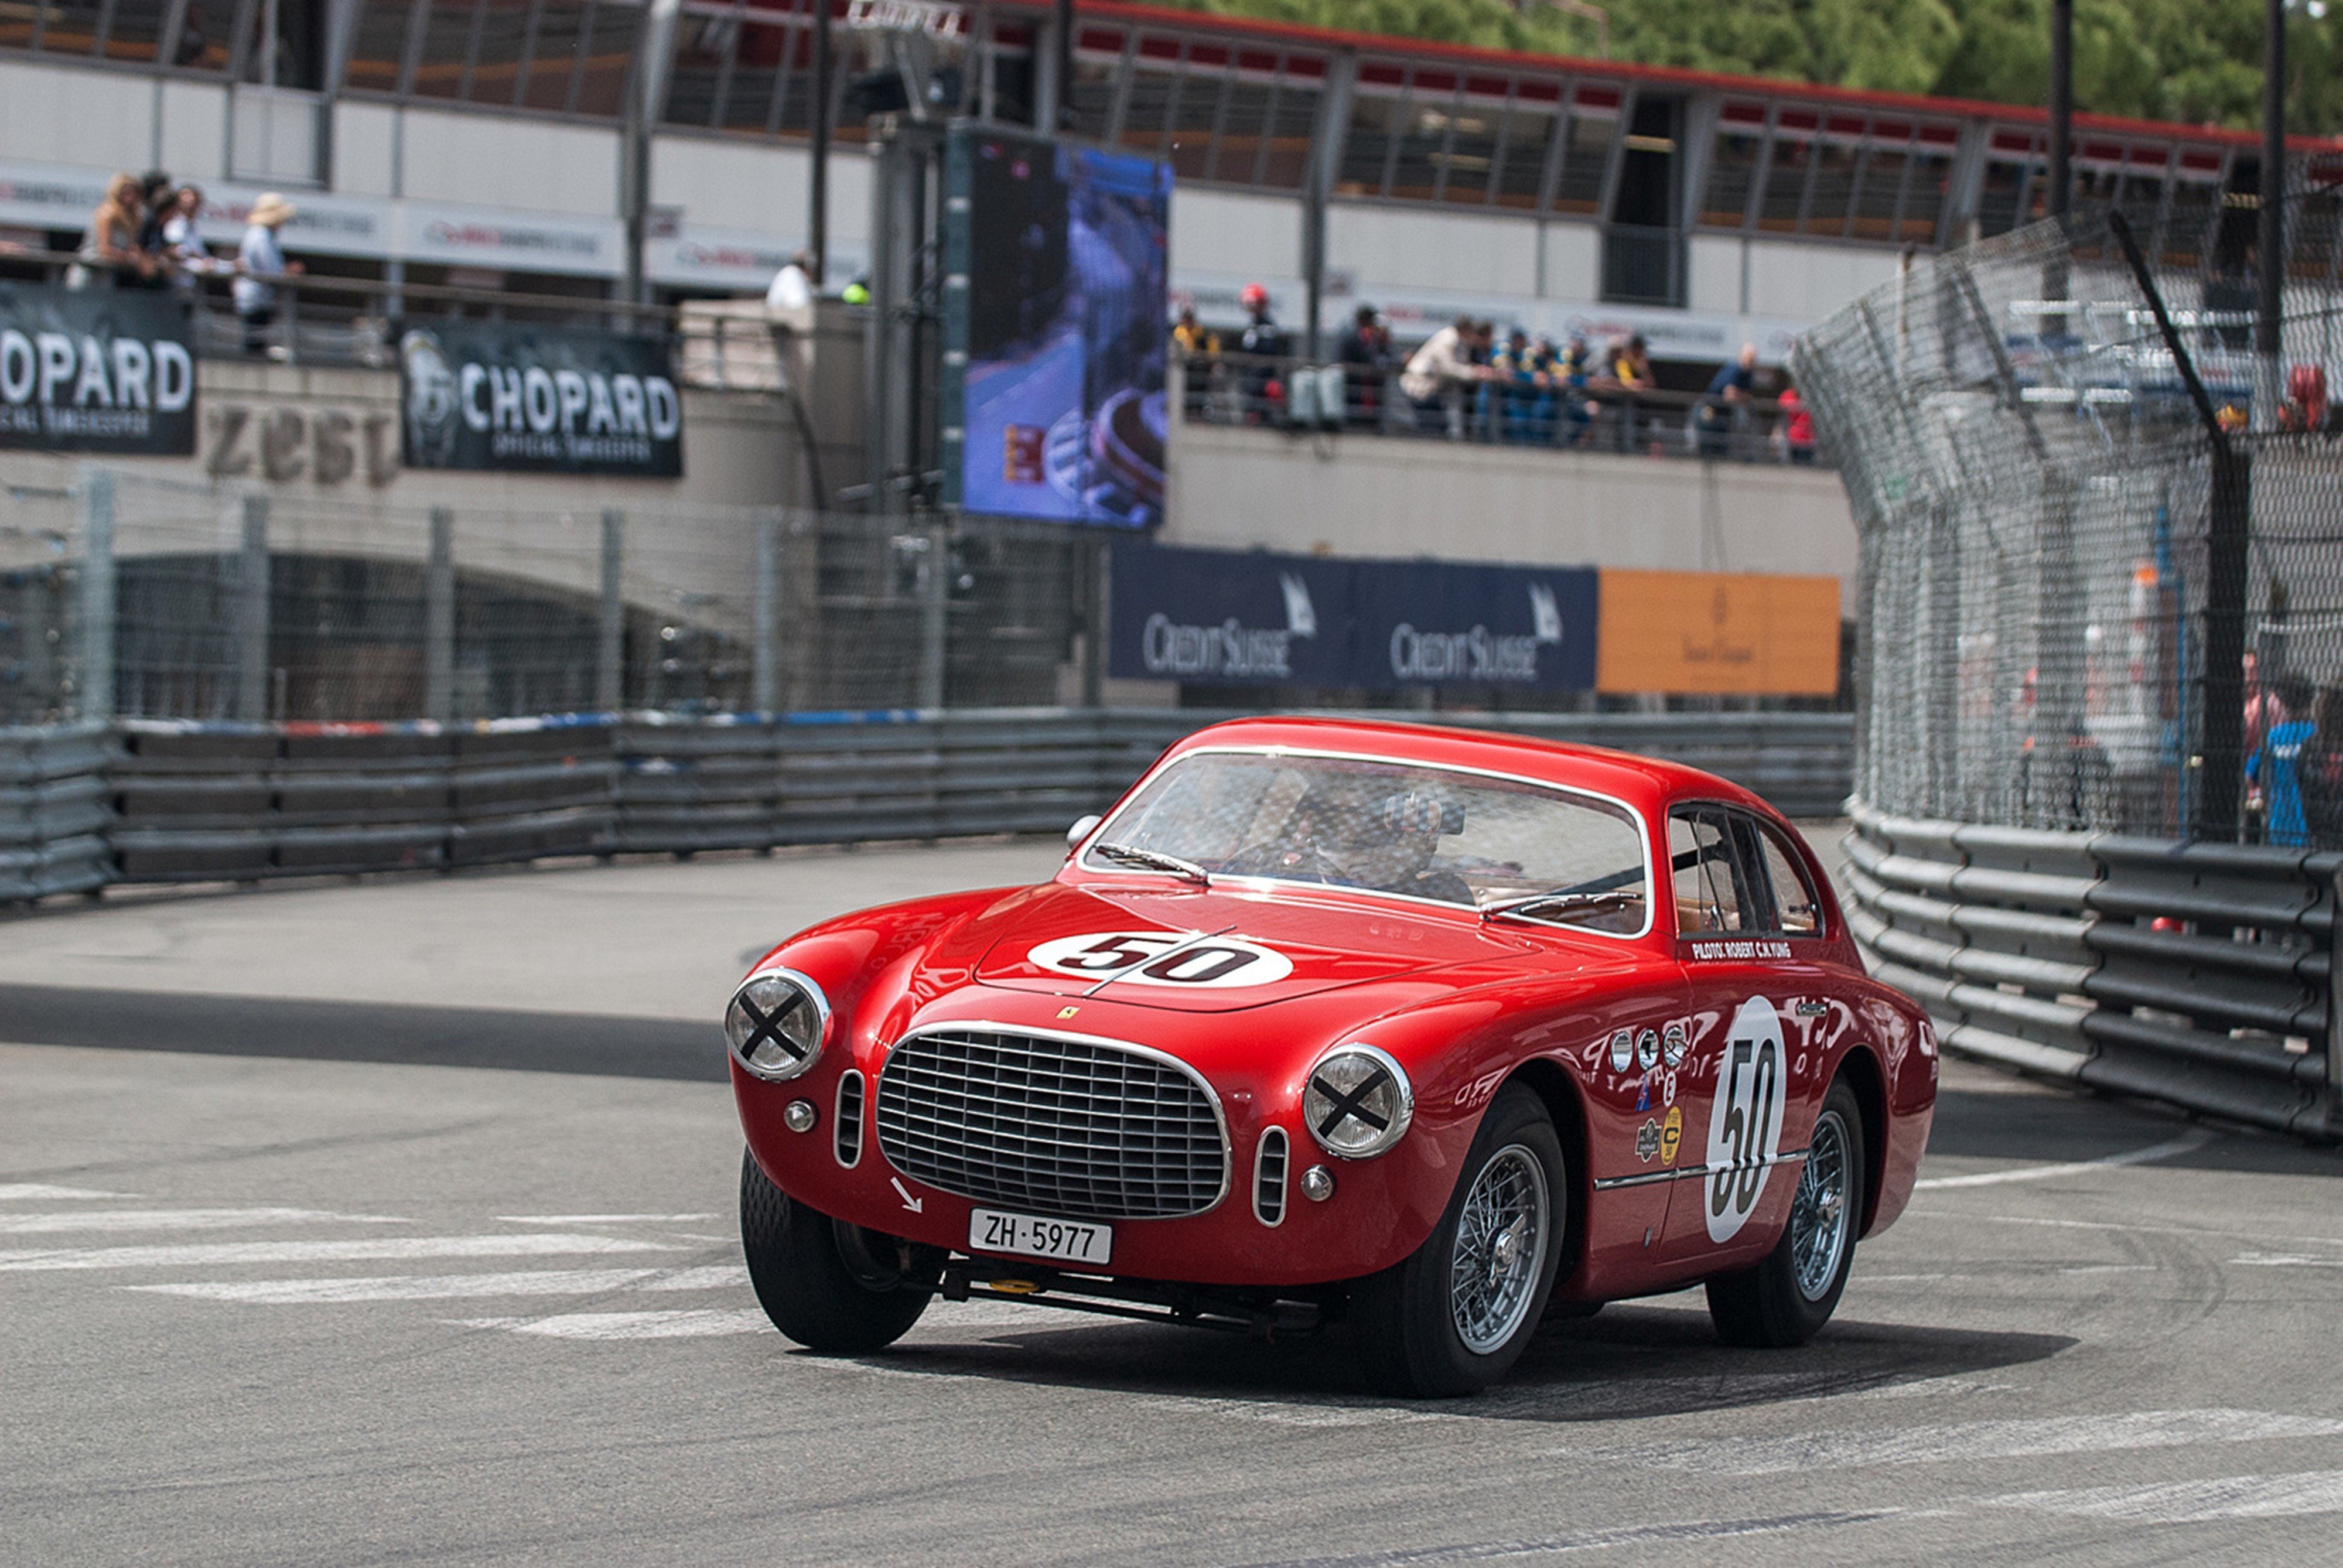 race, Car, Supercar, Racing, Classic, Retro, 1952, Ferrari, 225, S, 2, 4000x2677 Wallpaper